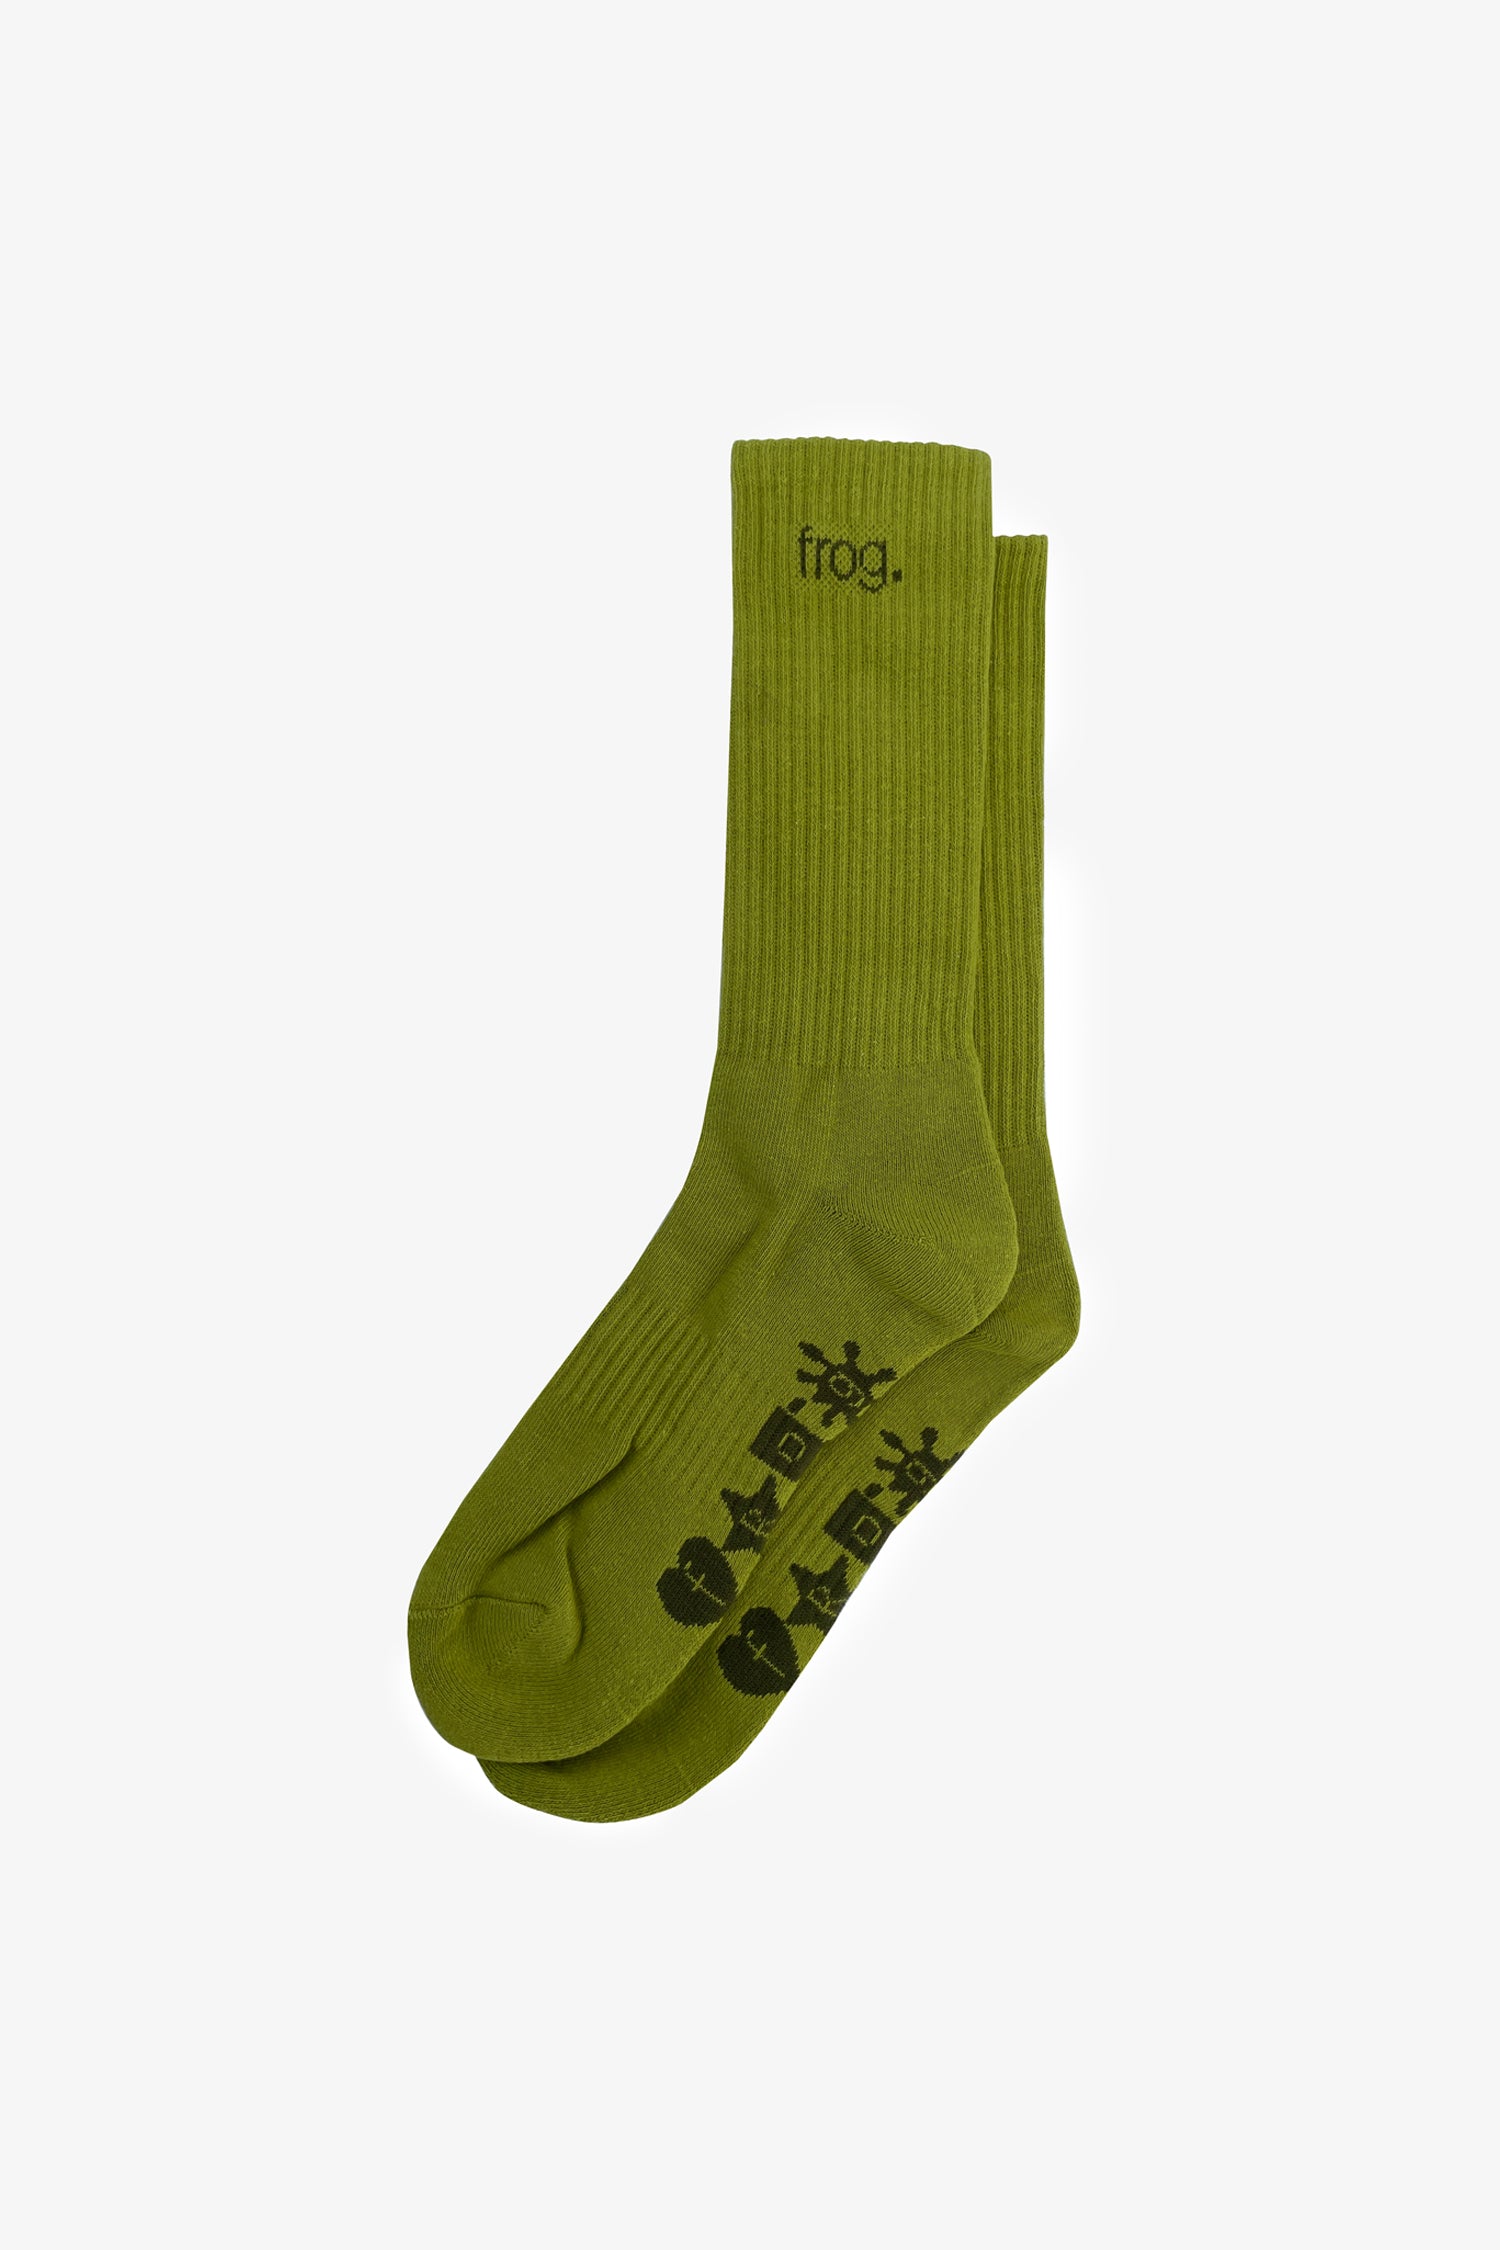 Frog Socks- Selectshop FRAME